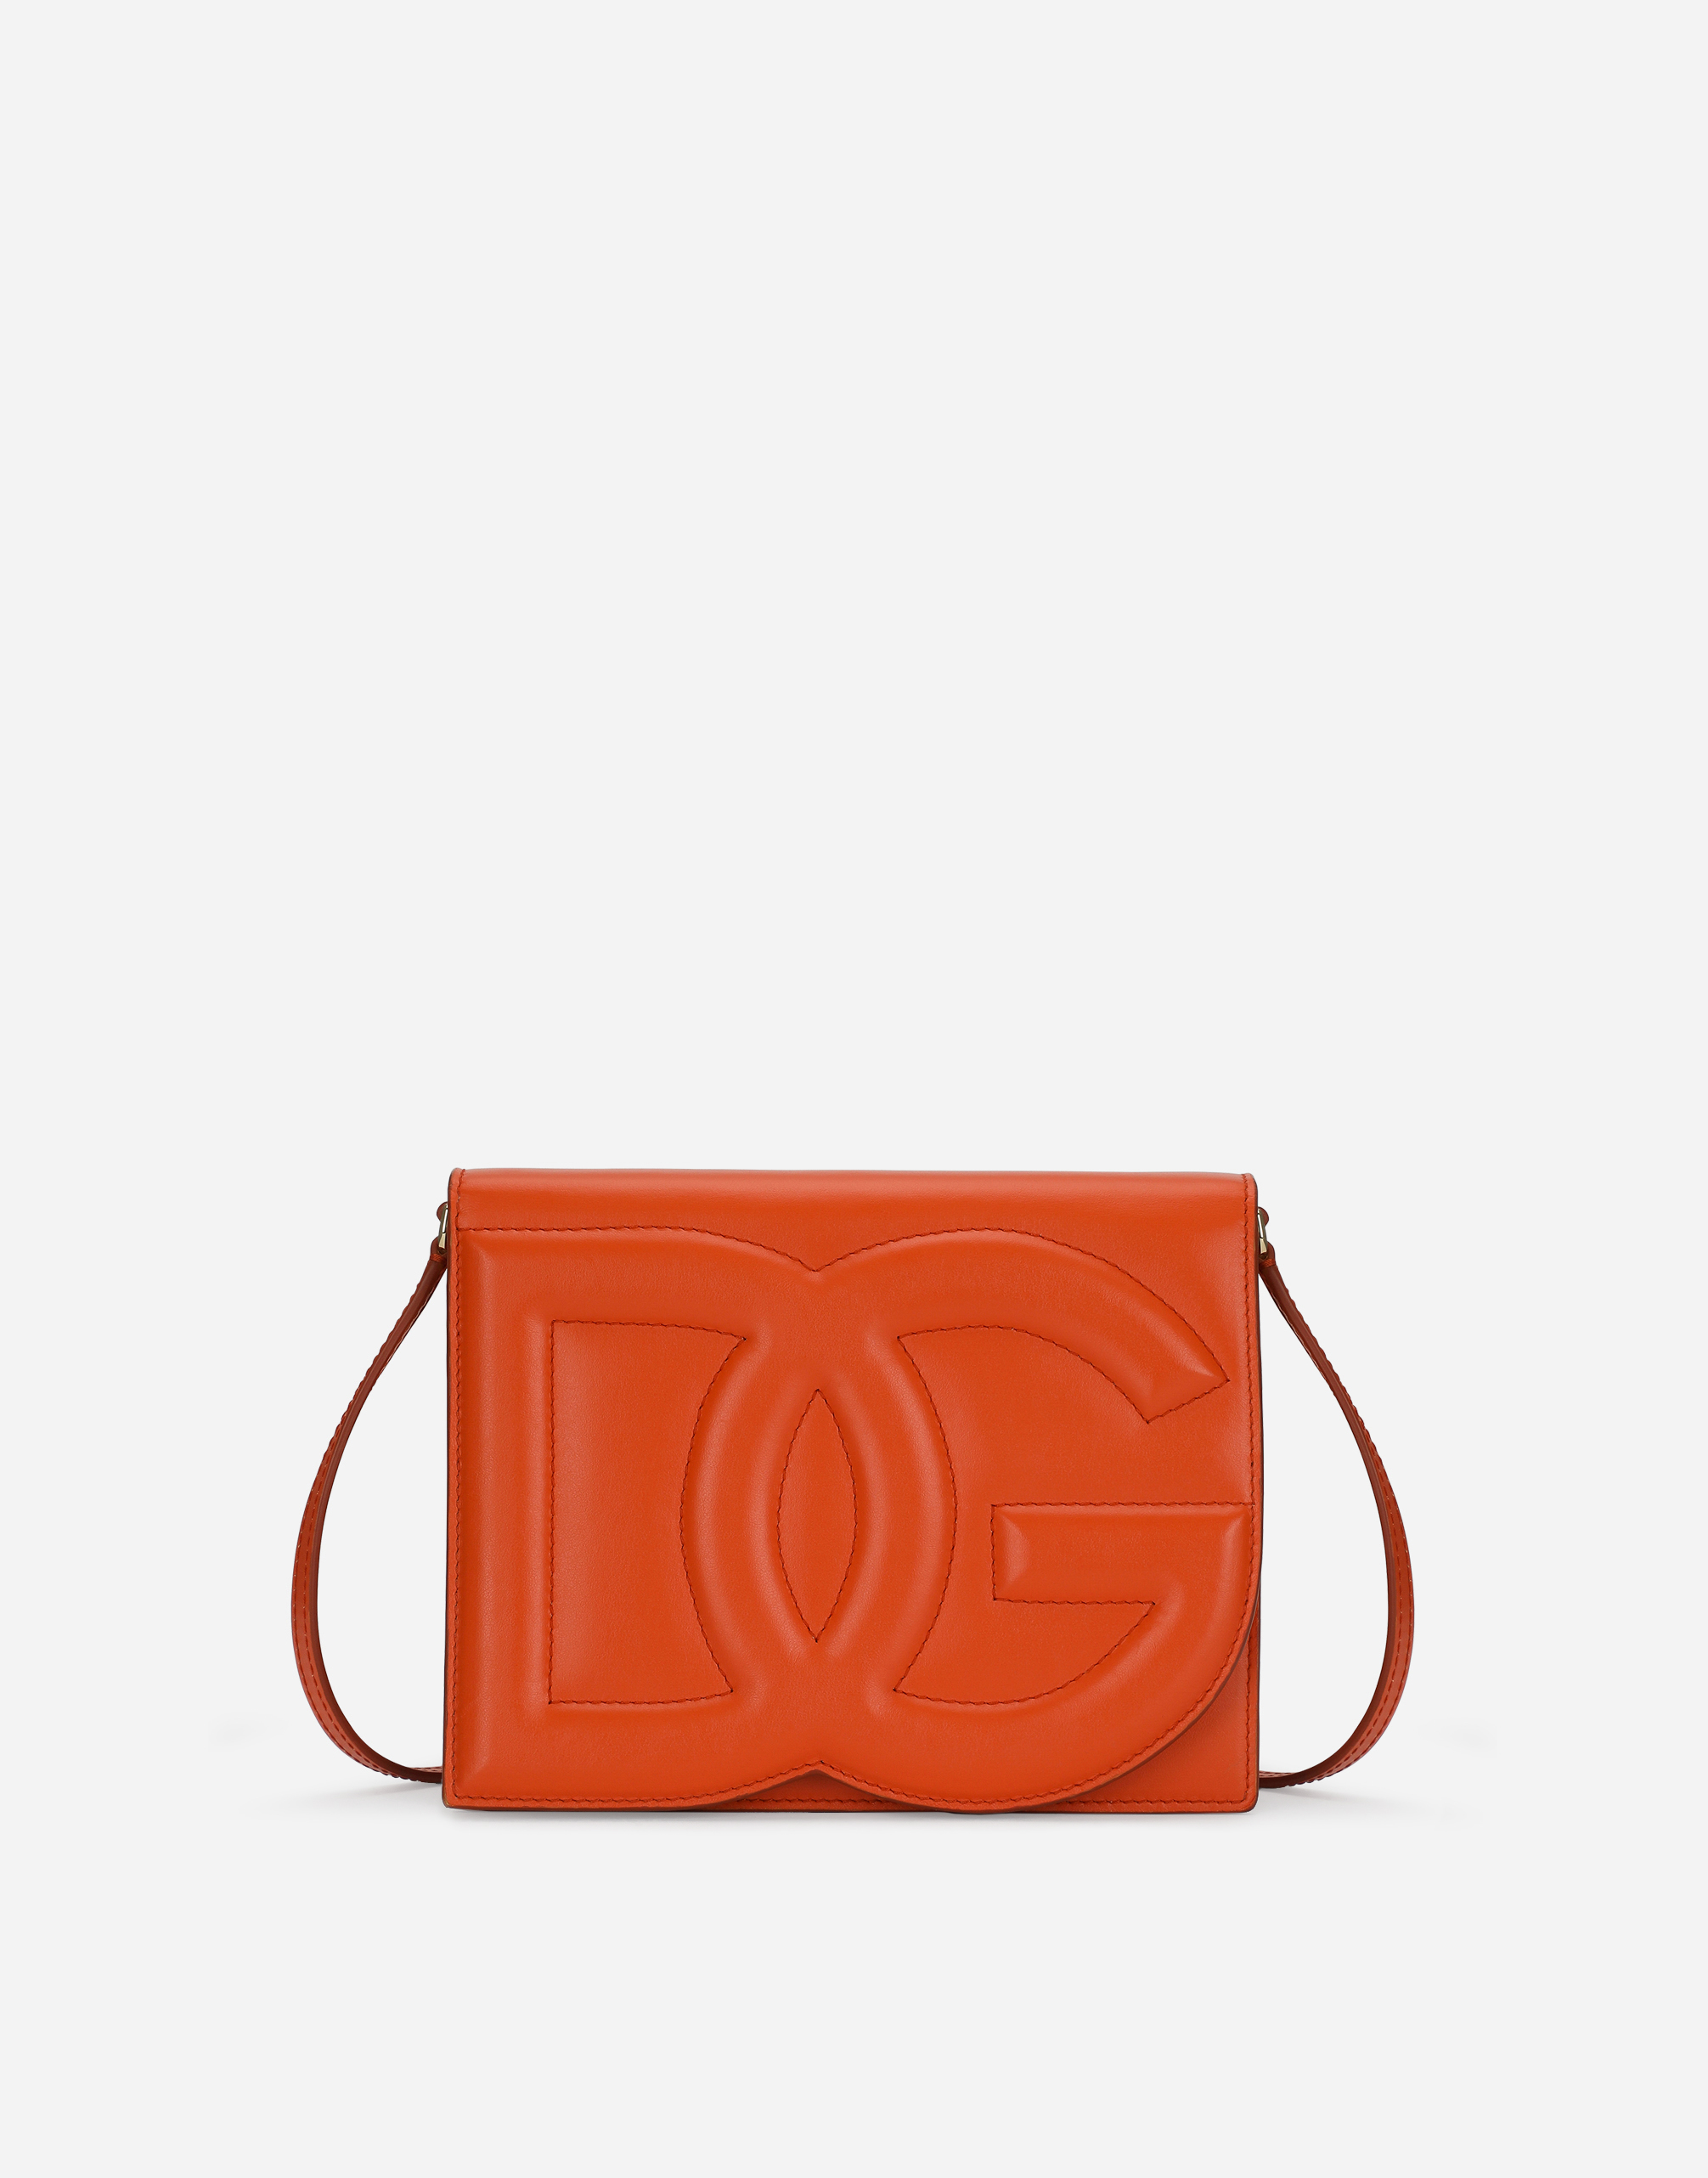 DG Logo crossbody bag in Orange